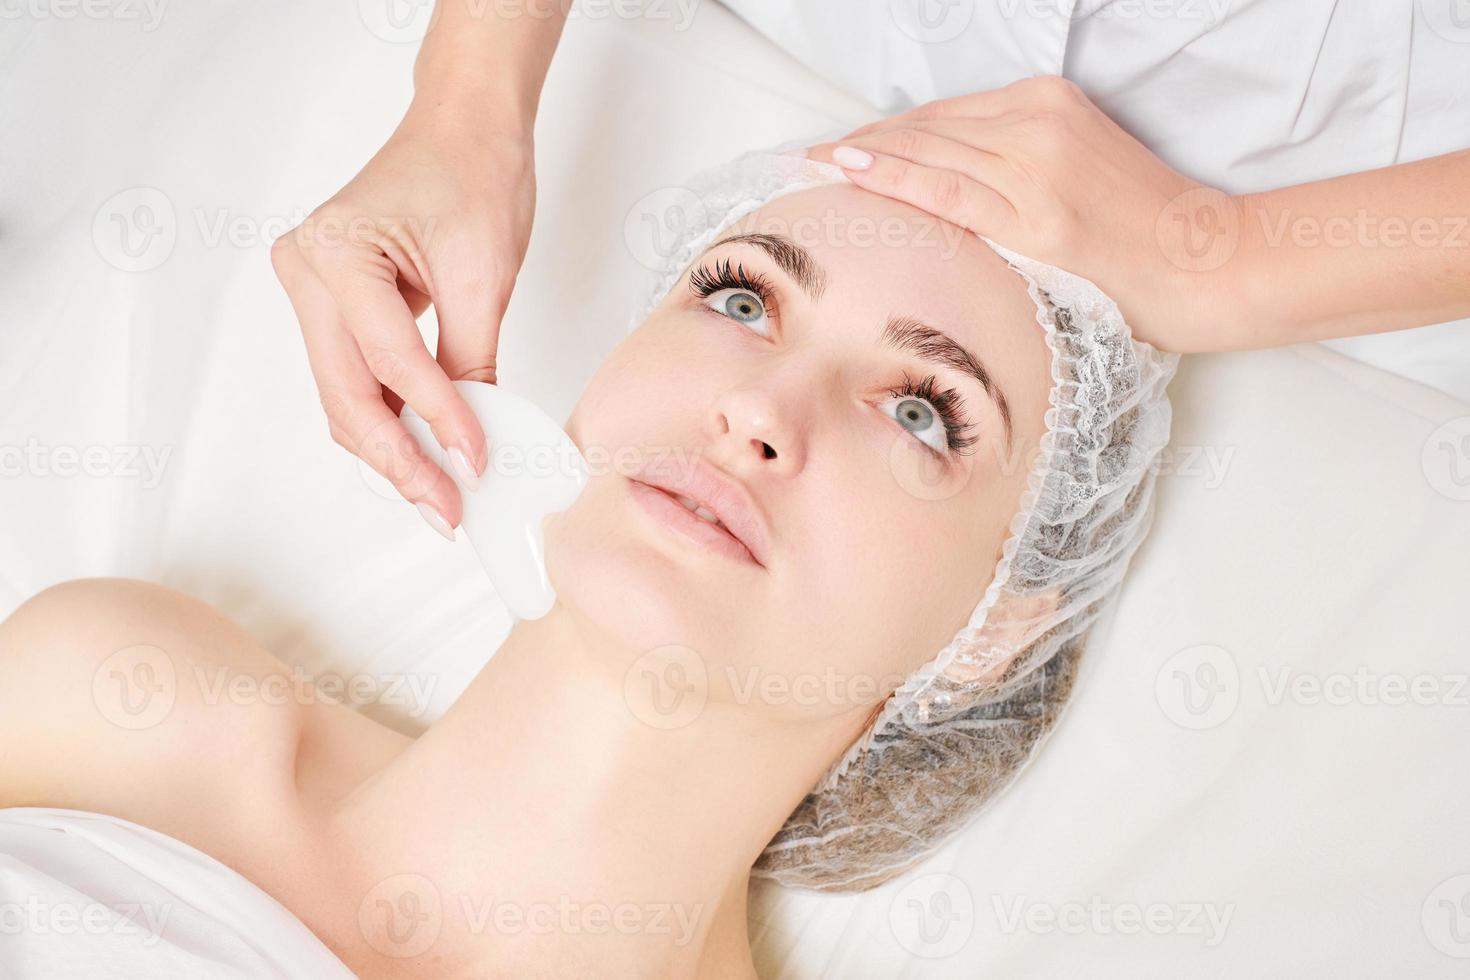 esteticista haciendo masaje facial con piedra gua sha de mujer piel facial para drenaje linfático foto